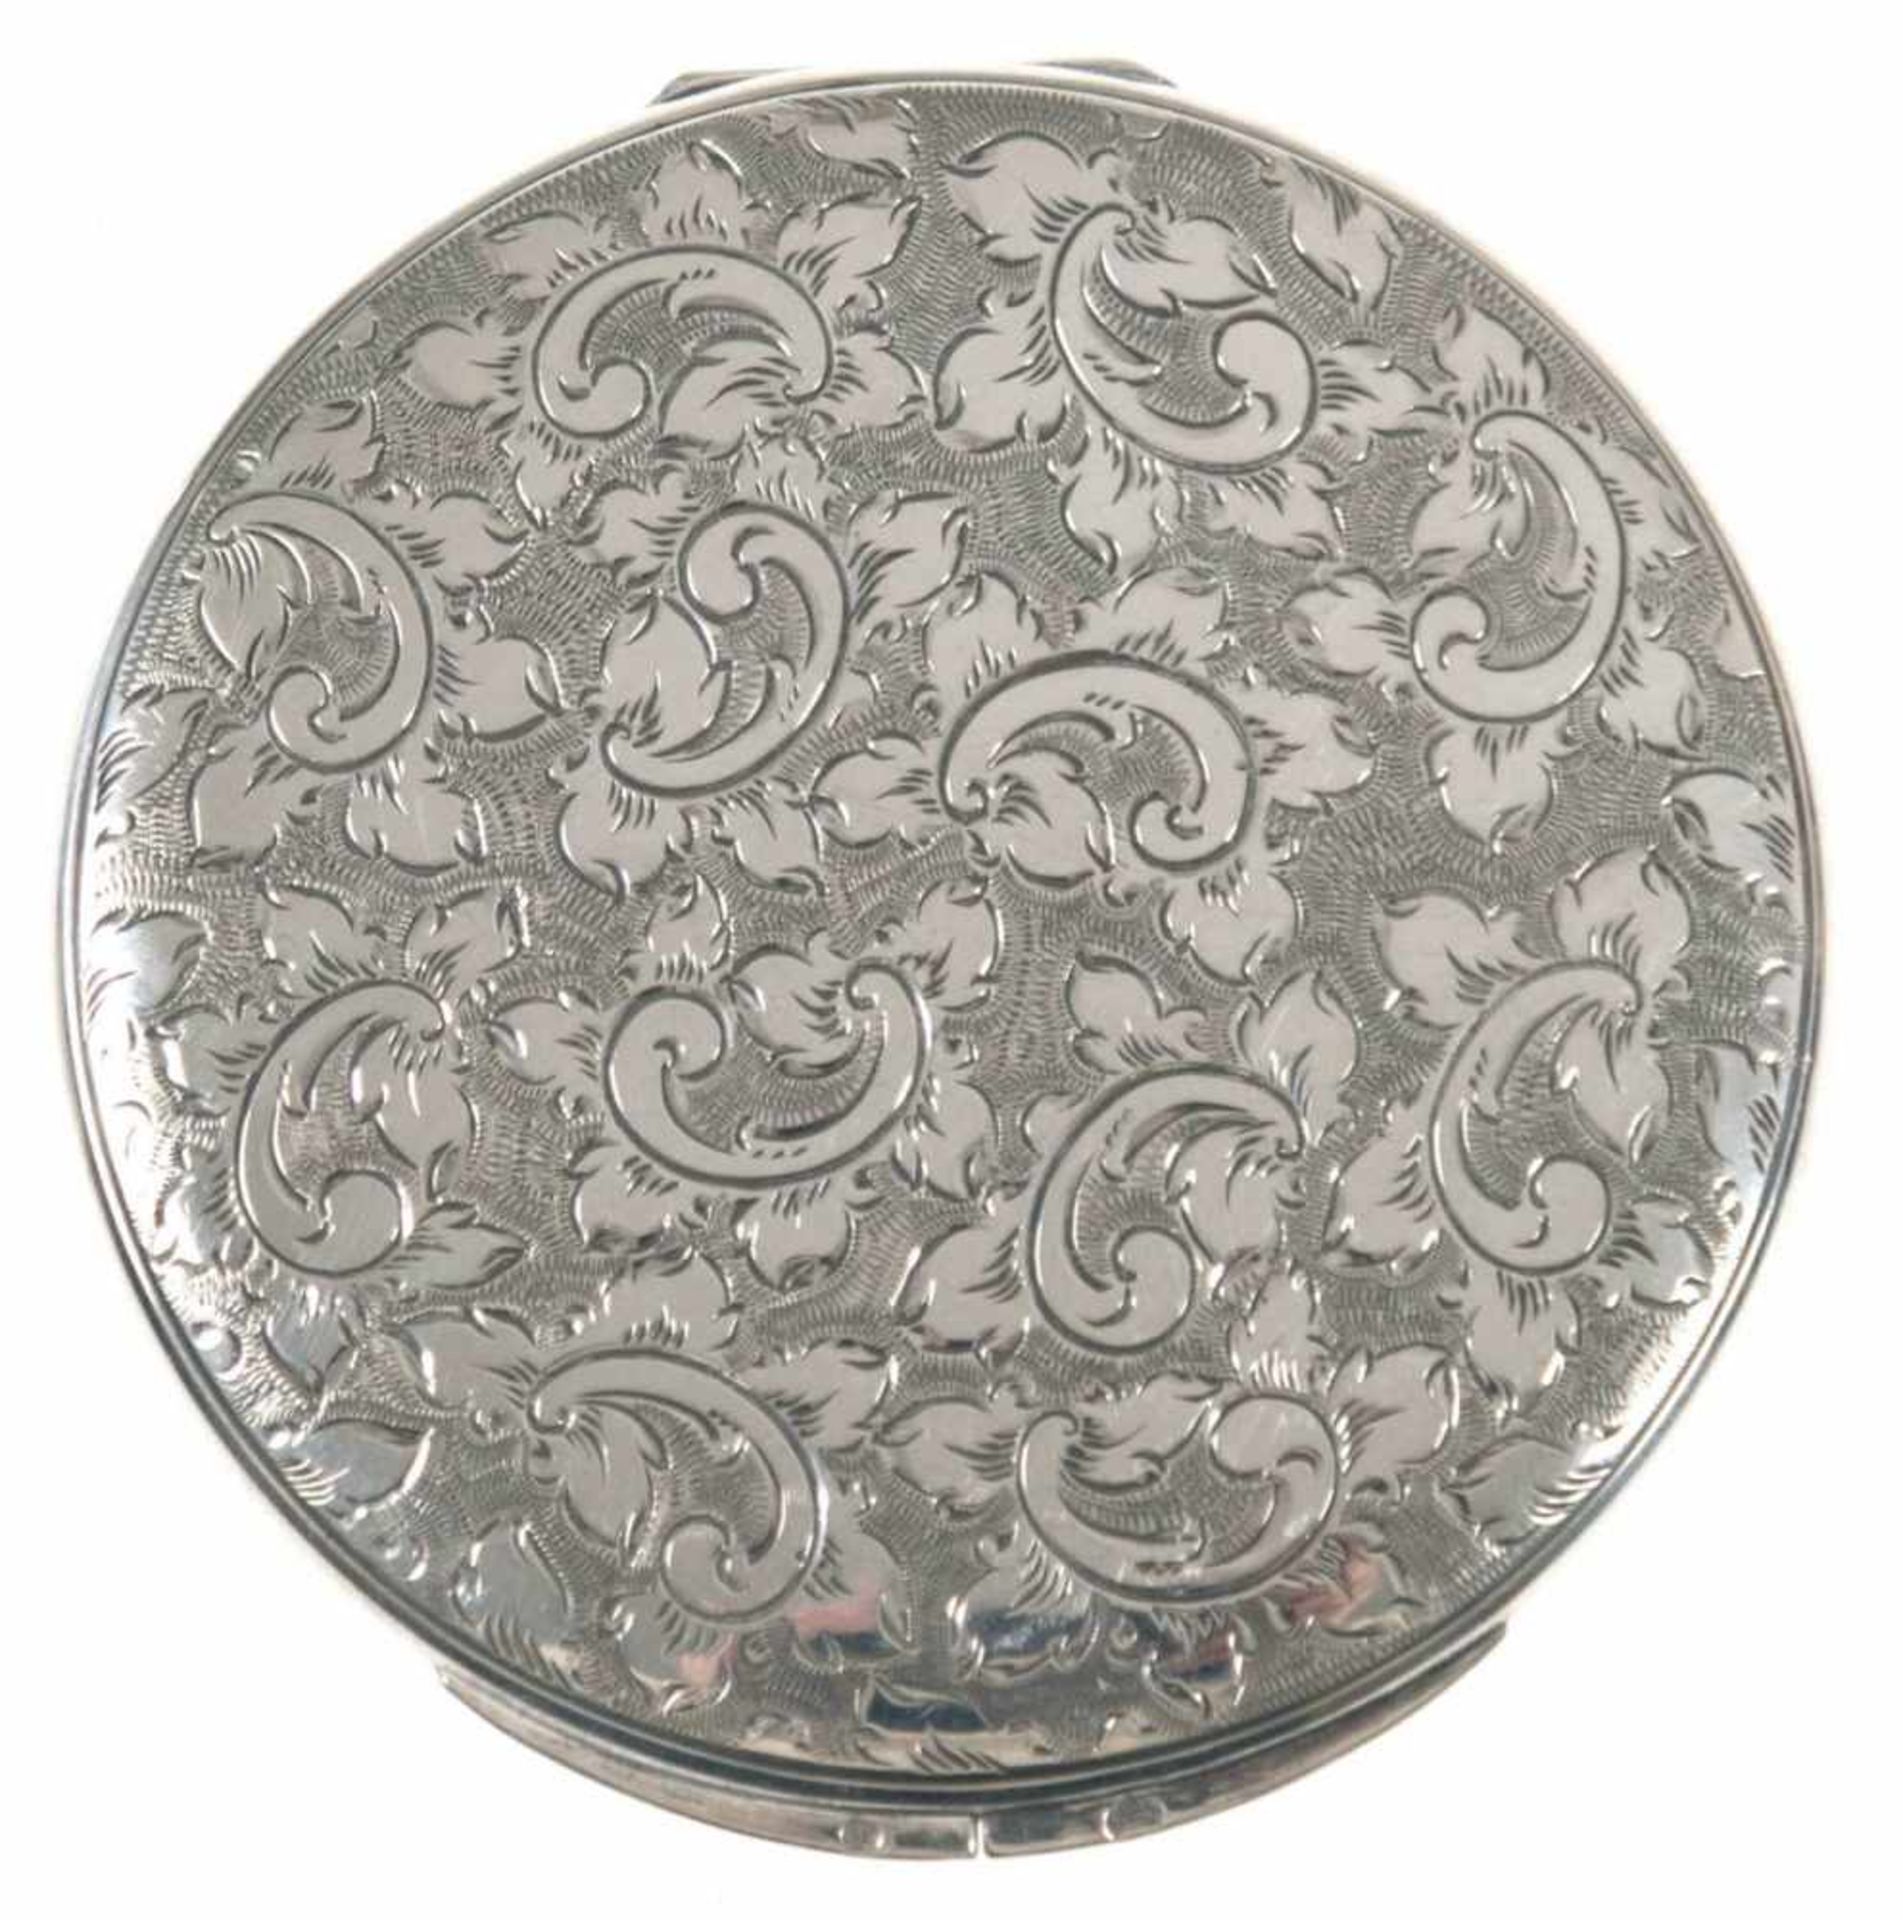 Puderdose, Dänemark 1930, Silber, punziert, ziseliert, Deckel mit Innenspiegel, Dm. 8 cm- - -23.80 %